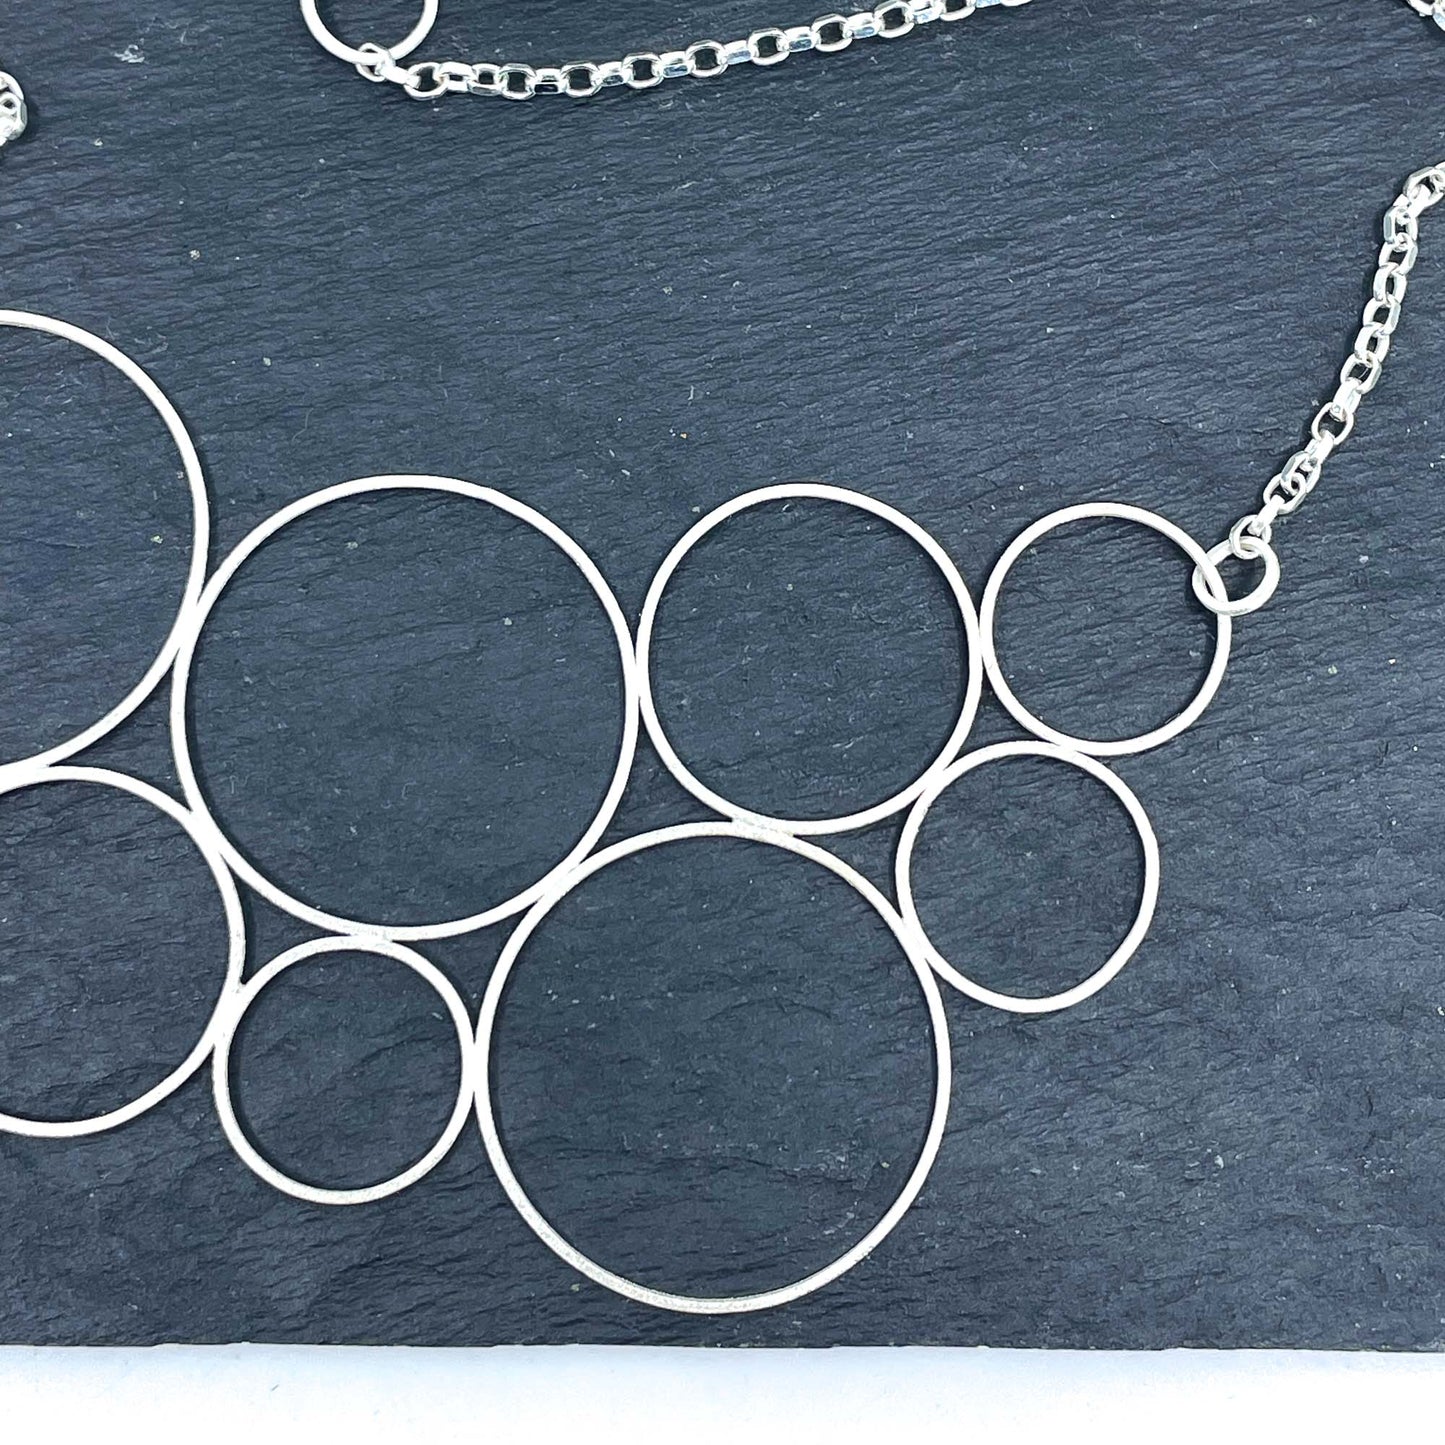 collier géométrique en argent avec cercles ronds et chaîne réglable